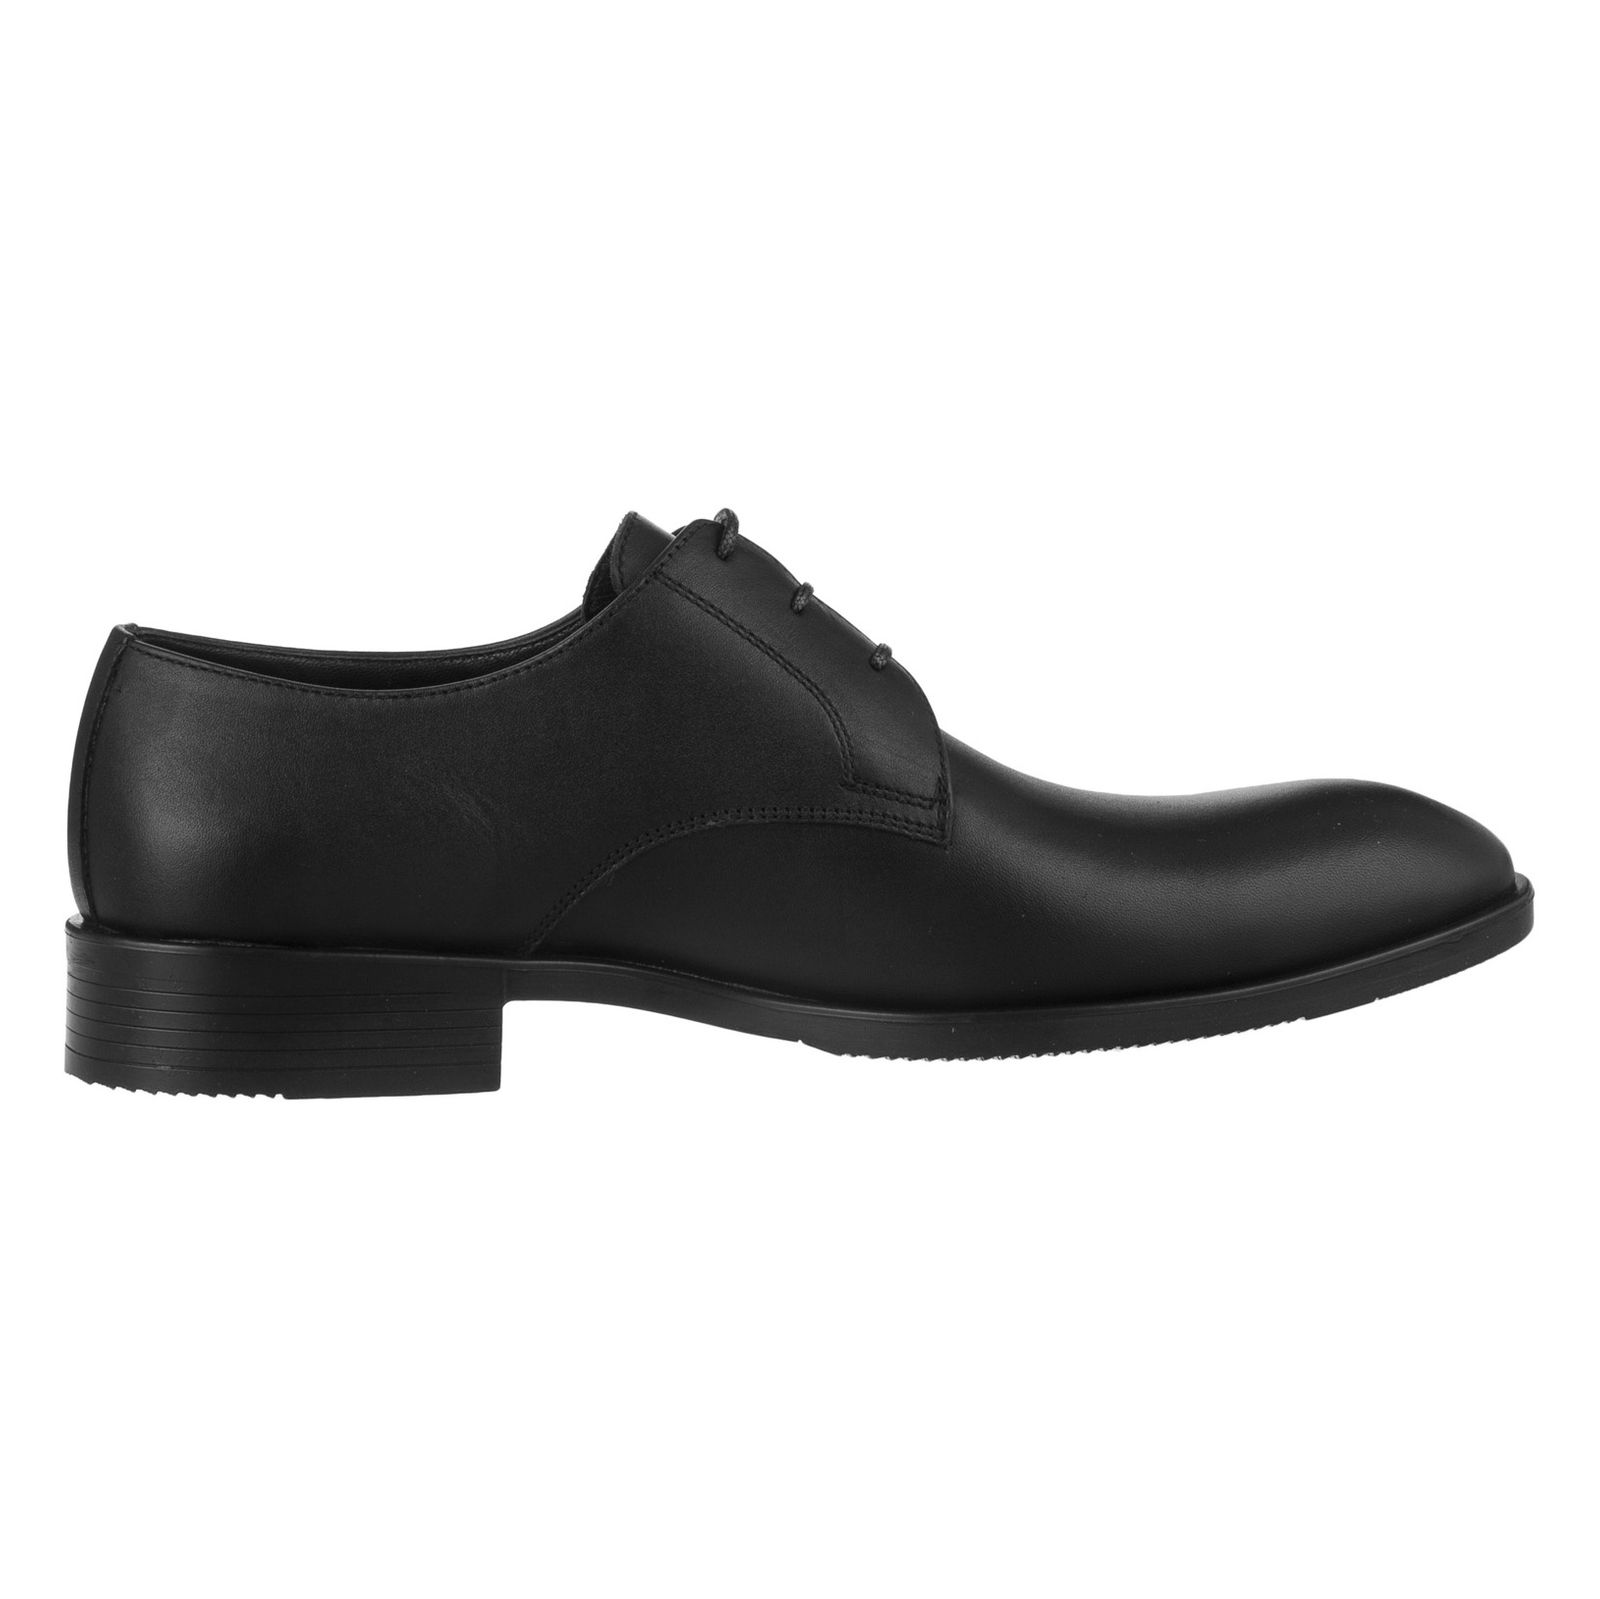 کفش مردانه گاندو مدل 504-99 - مشکی - 3